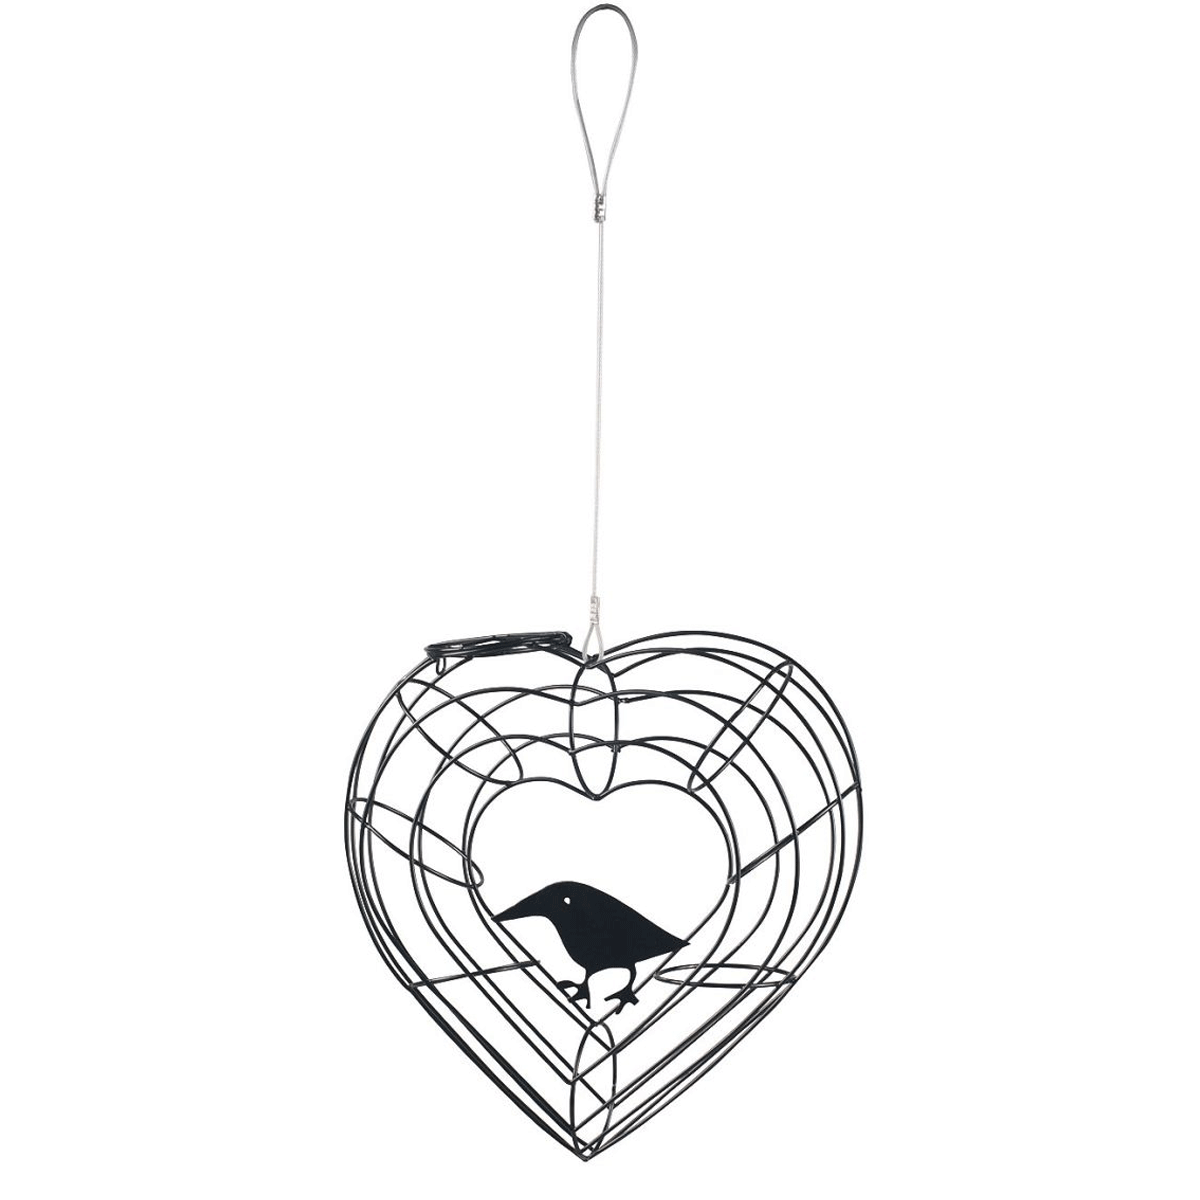 Erdtmanns suport găluște păsări in formă de inimă